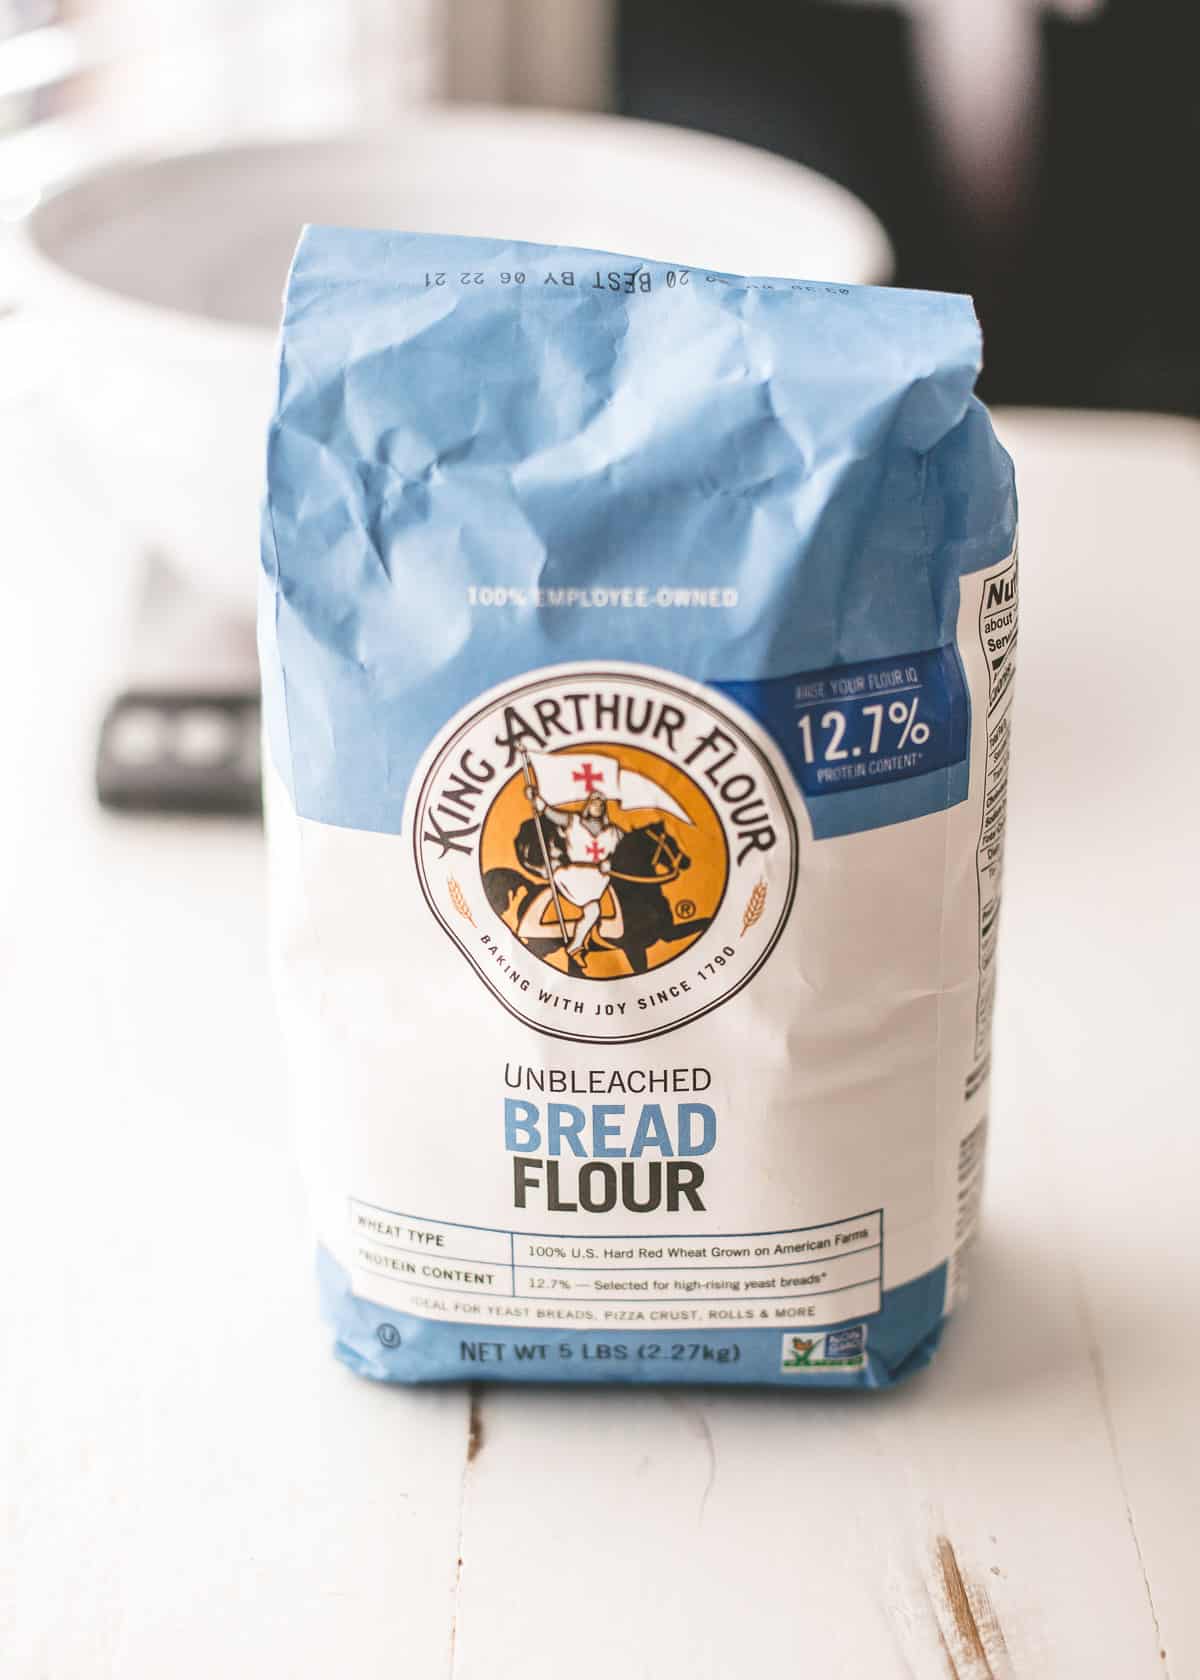 King Arthur bread flour